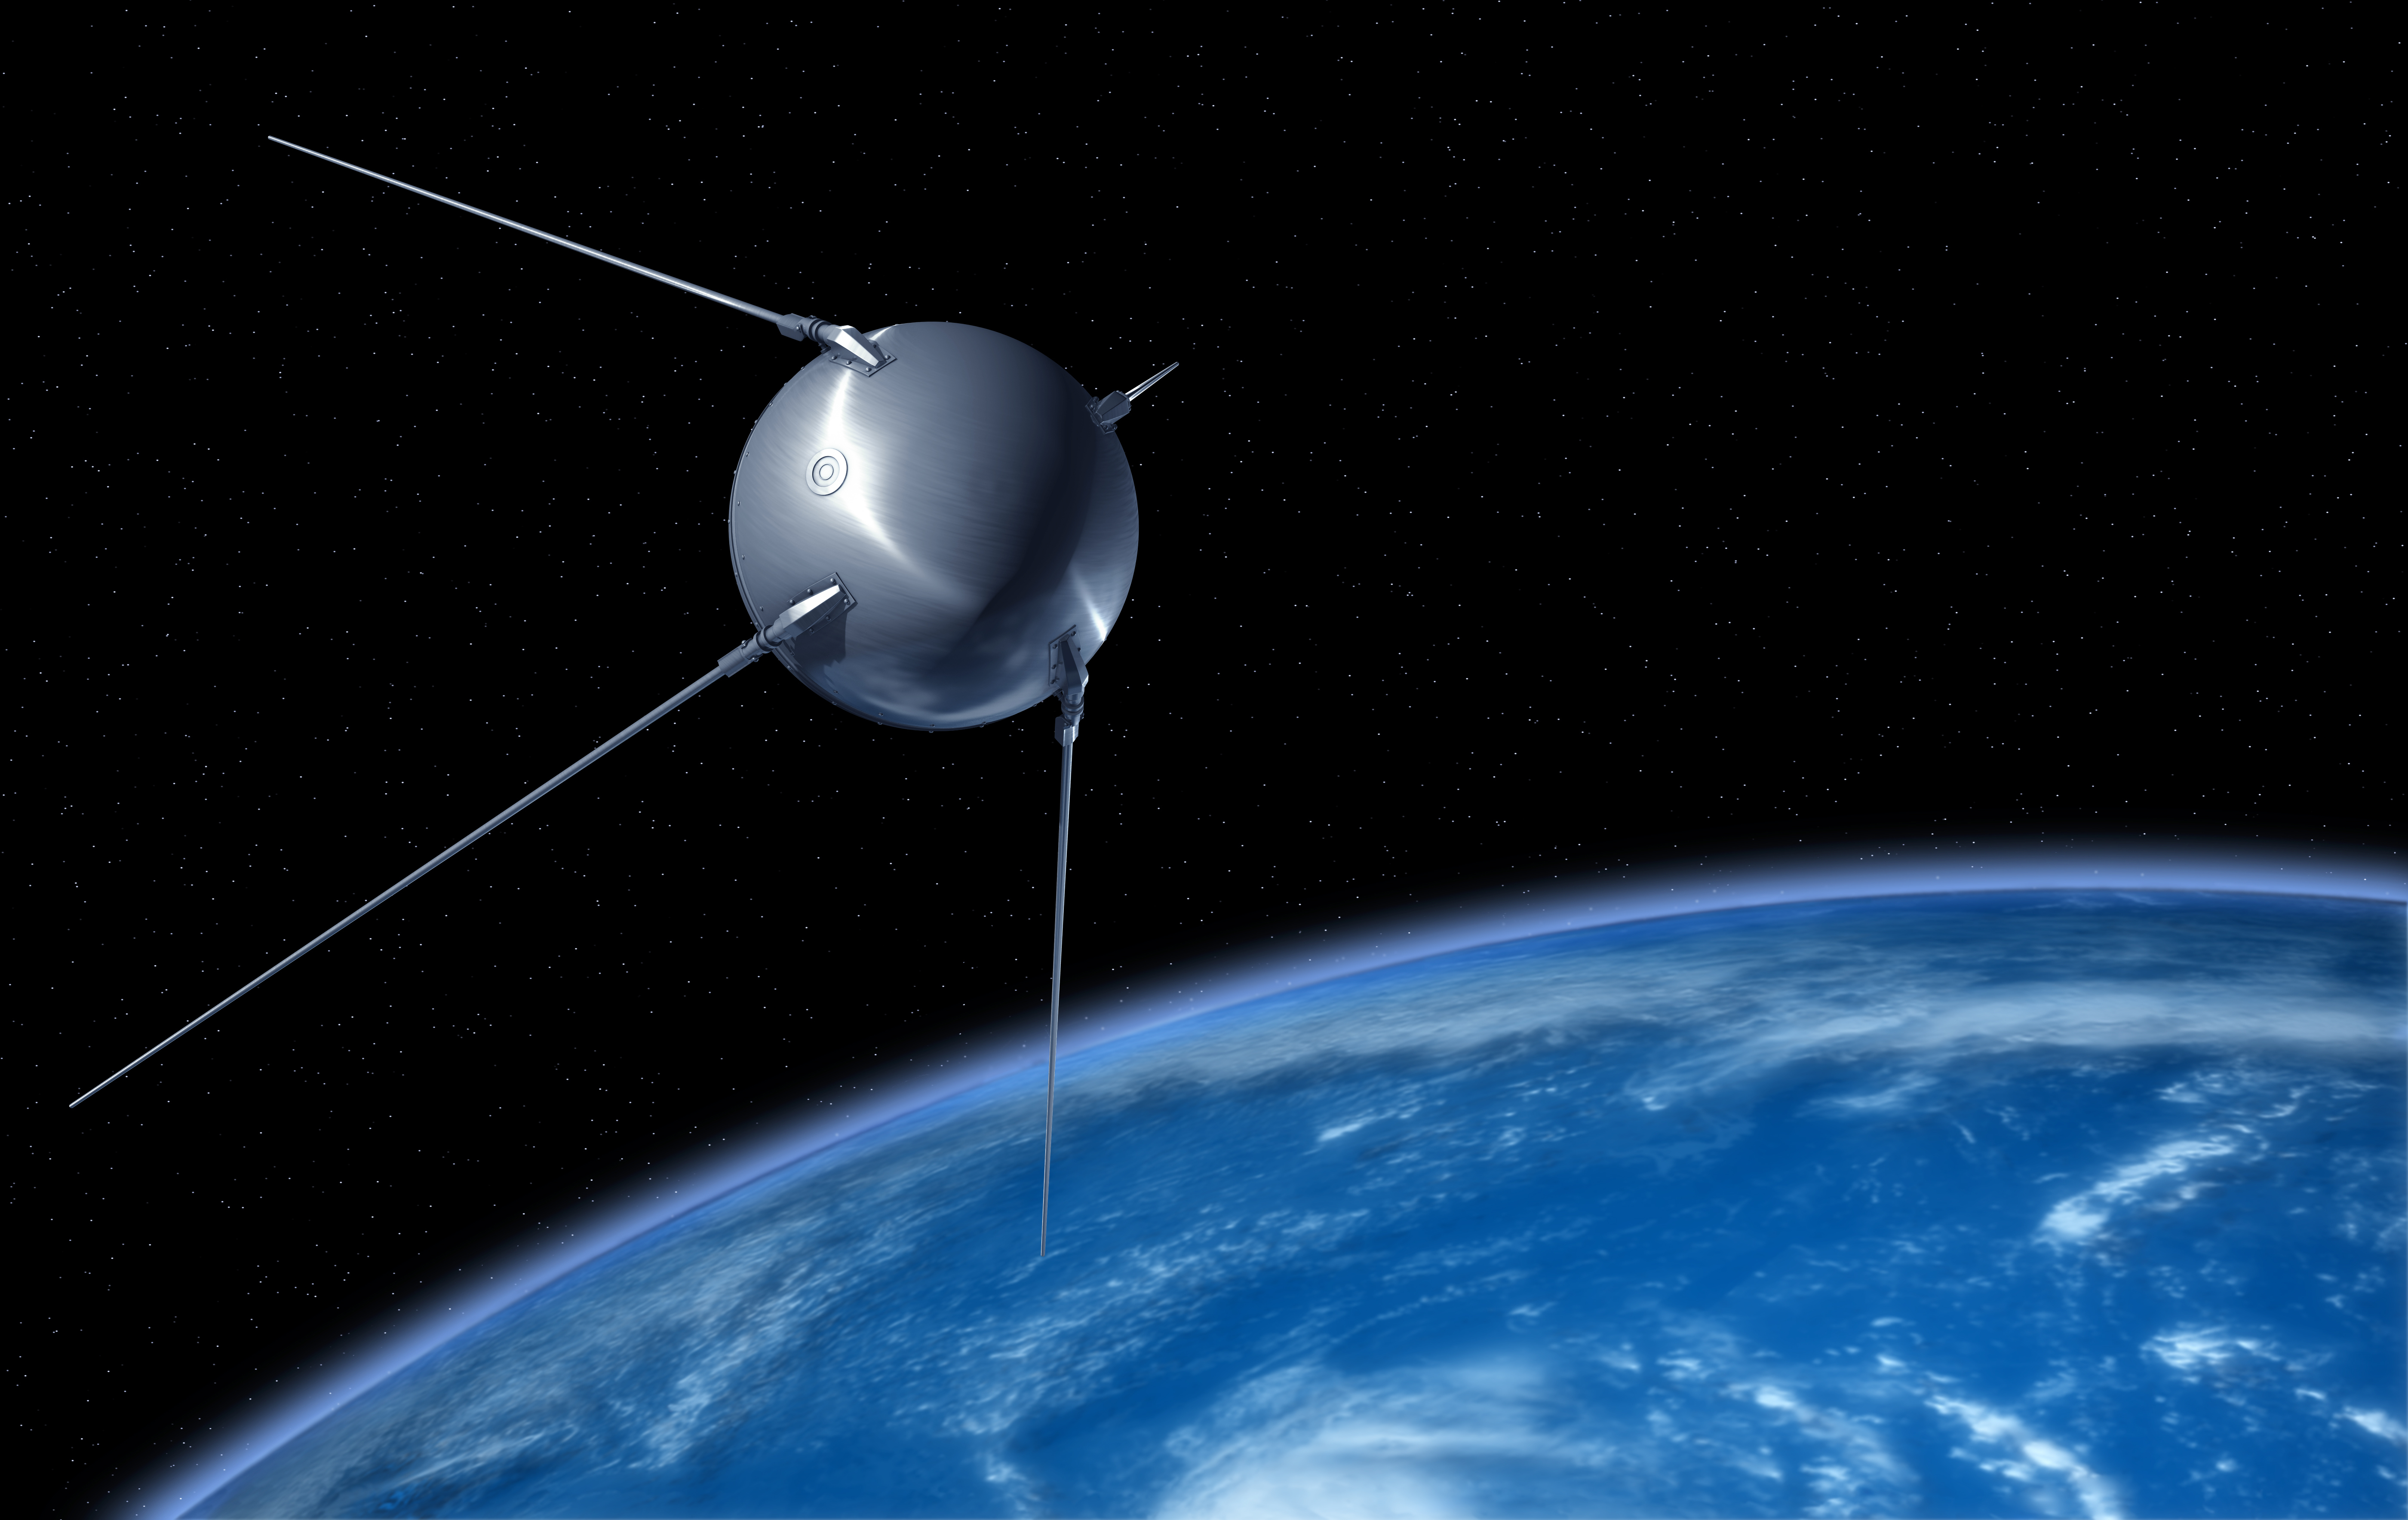 Первый спутник картинка. Первый искусственный Спутник земли 1957. «Спутник-1», первый искуссттвенный Спутник. Запуск 4 октября 1957 года первого в мире искусственного спутника земли. Запуск первого искусственного спутника земли Спутник-1.